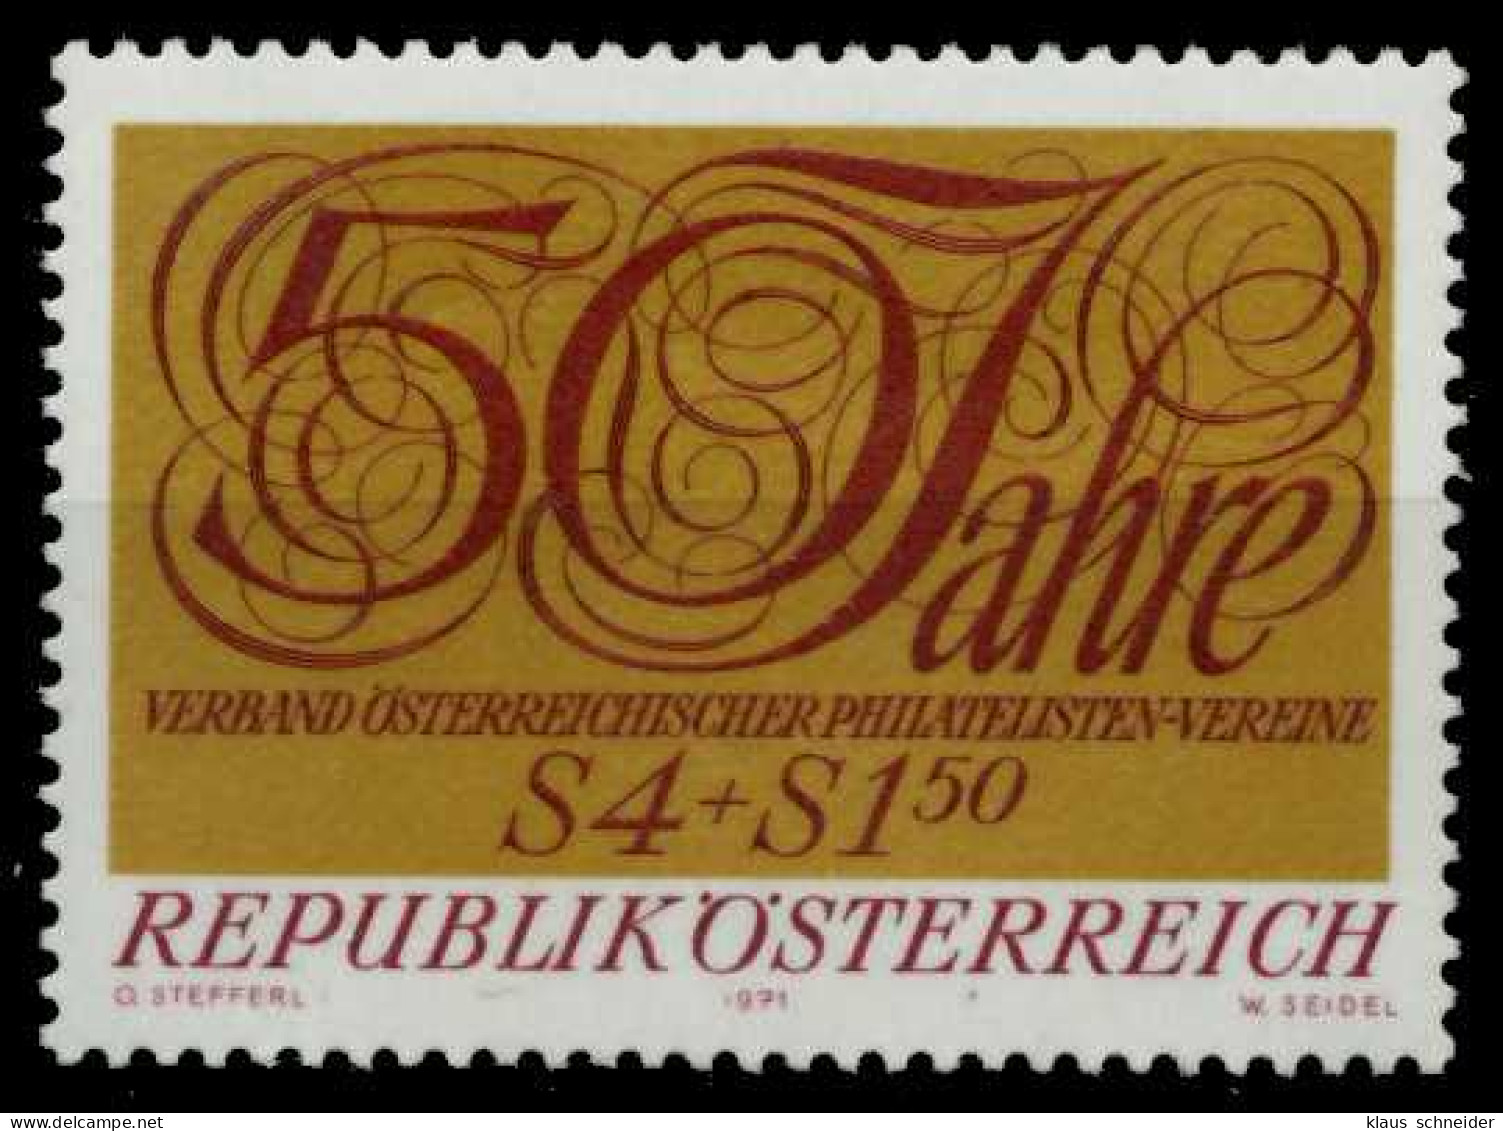 ÖSTERREICH 1971 Nr 1380 Postfrisch S5AD92A - Neufs